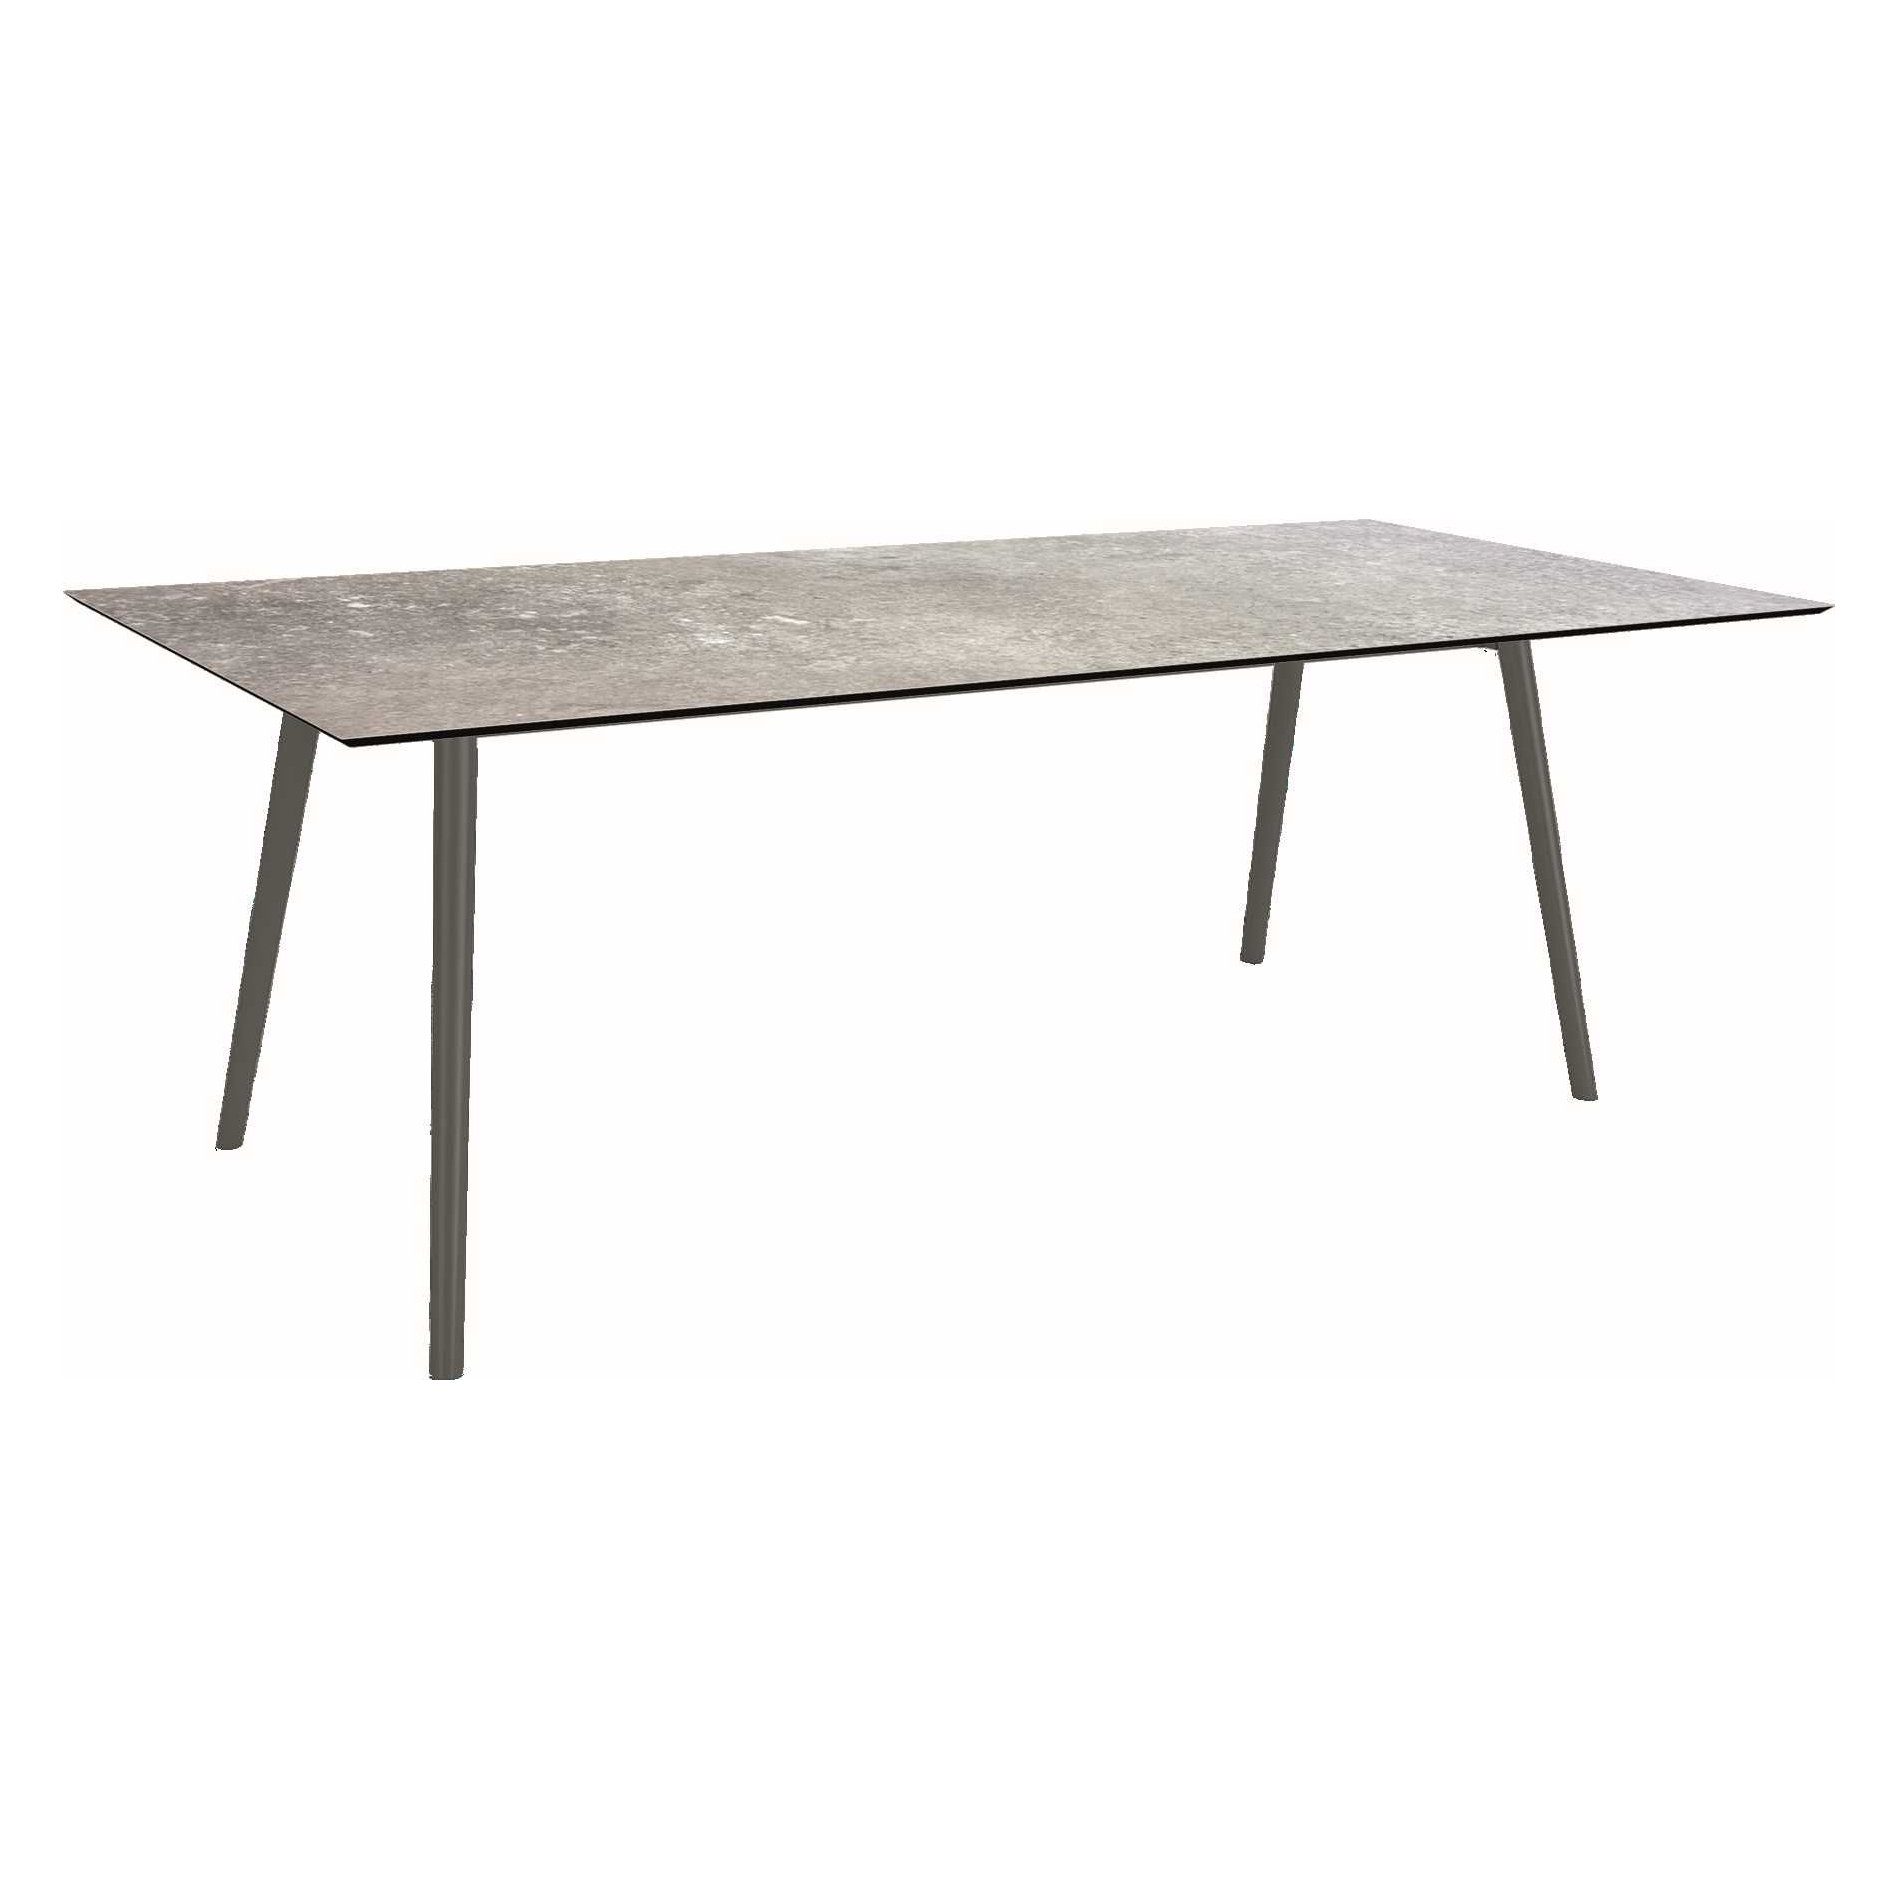 Stern Tisch "Interno", Größe 220x100cm, Alu anthrazit, Rundrohr, Tischplatte HPL Vintage Stone